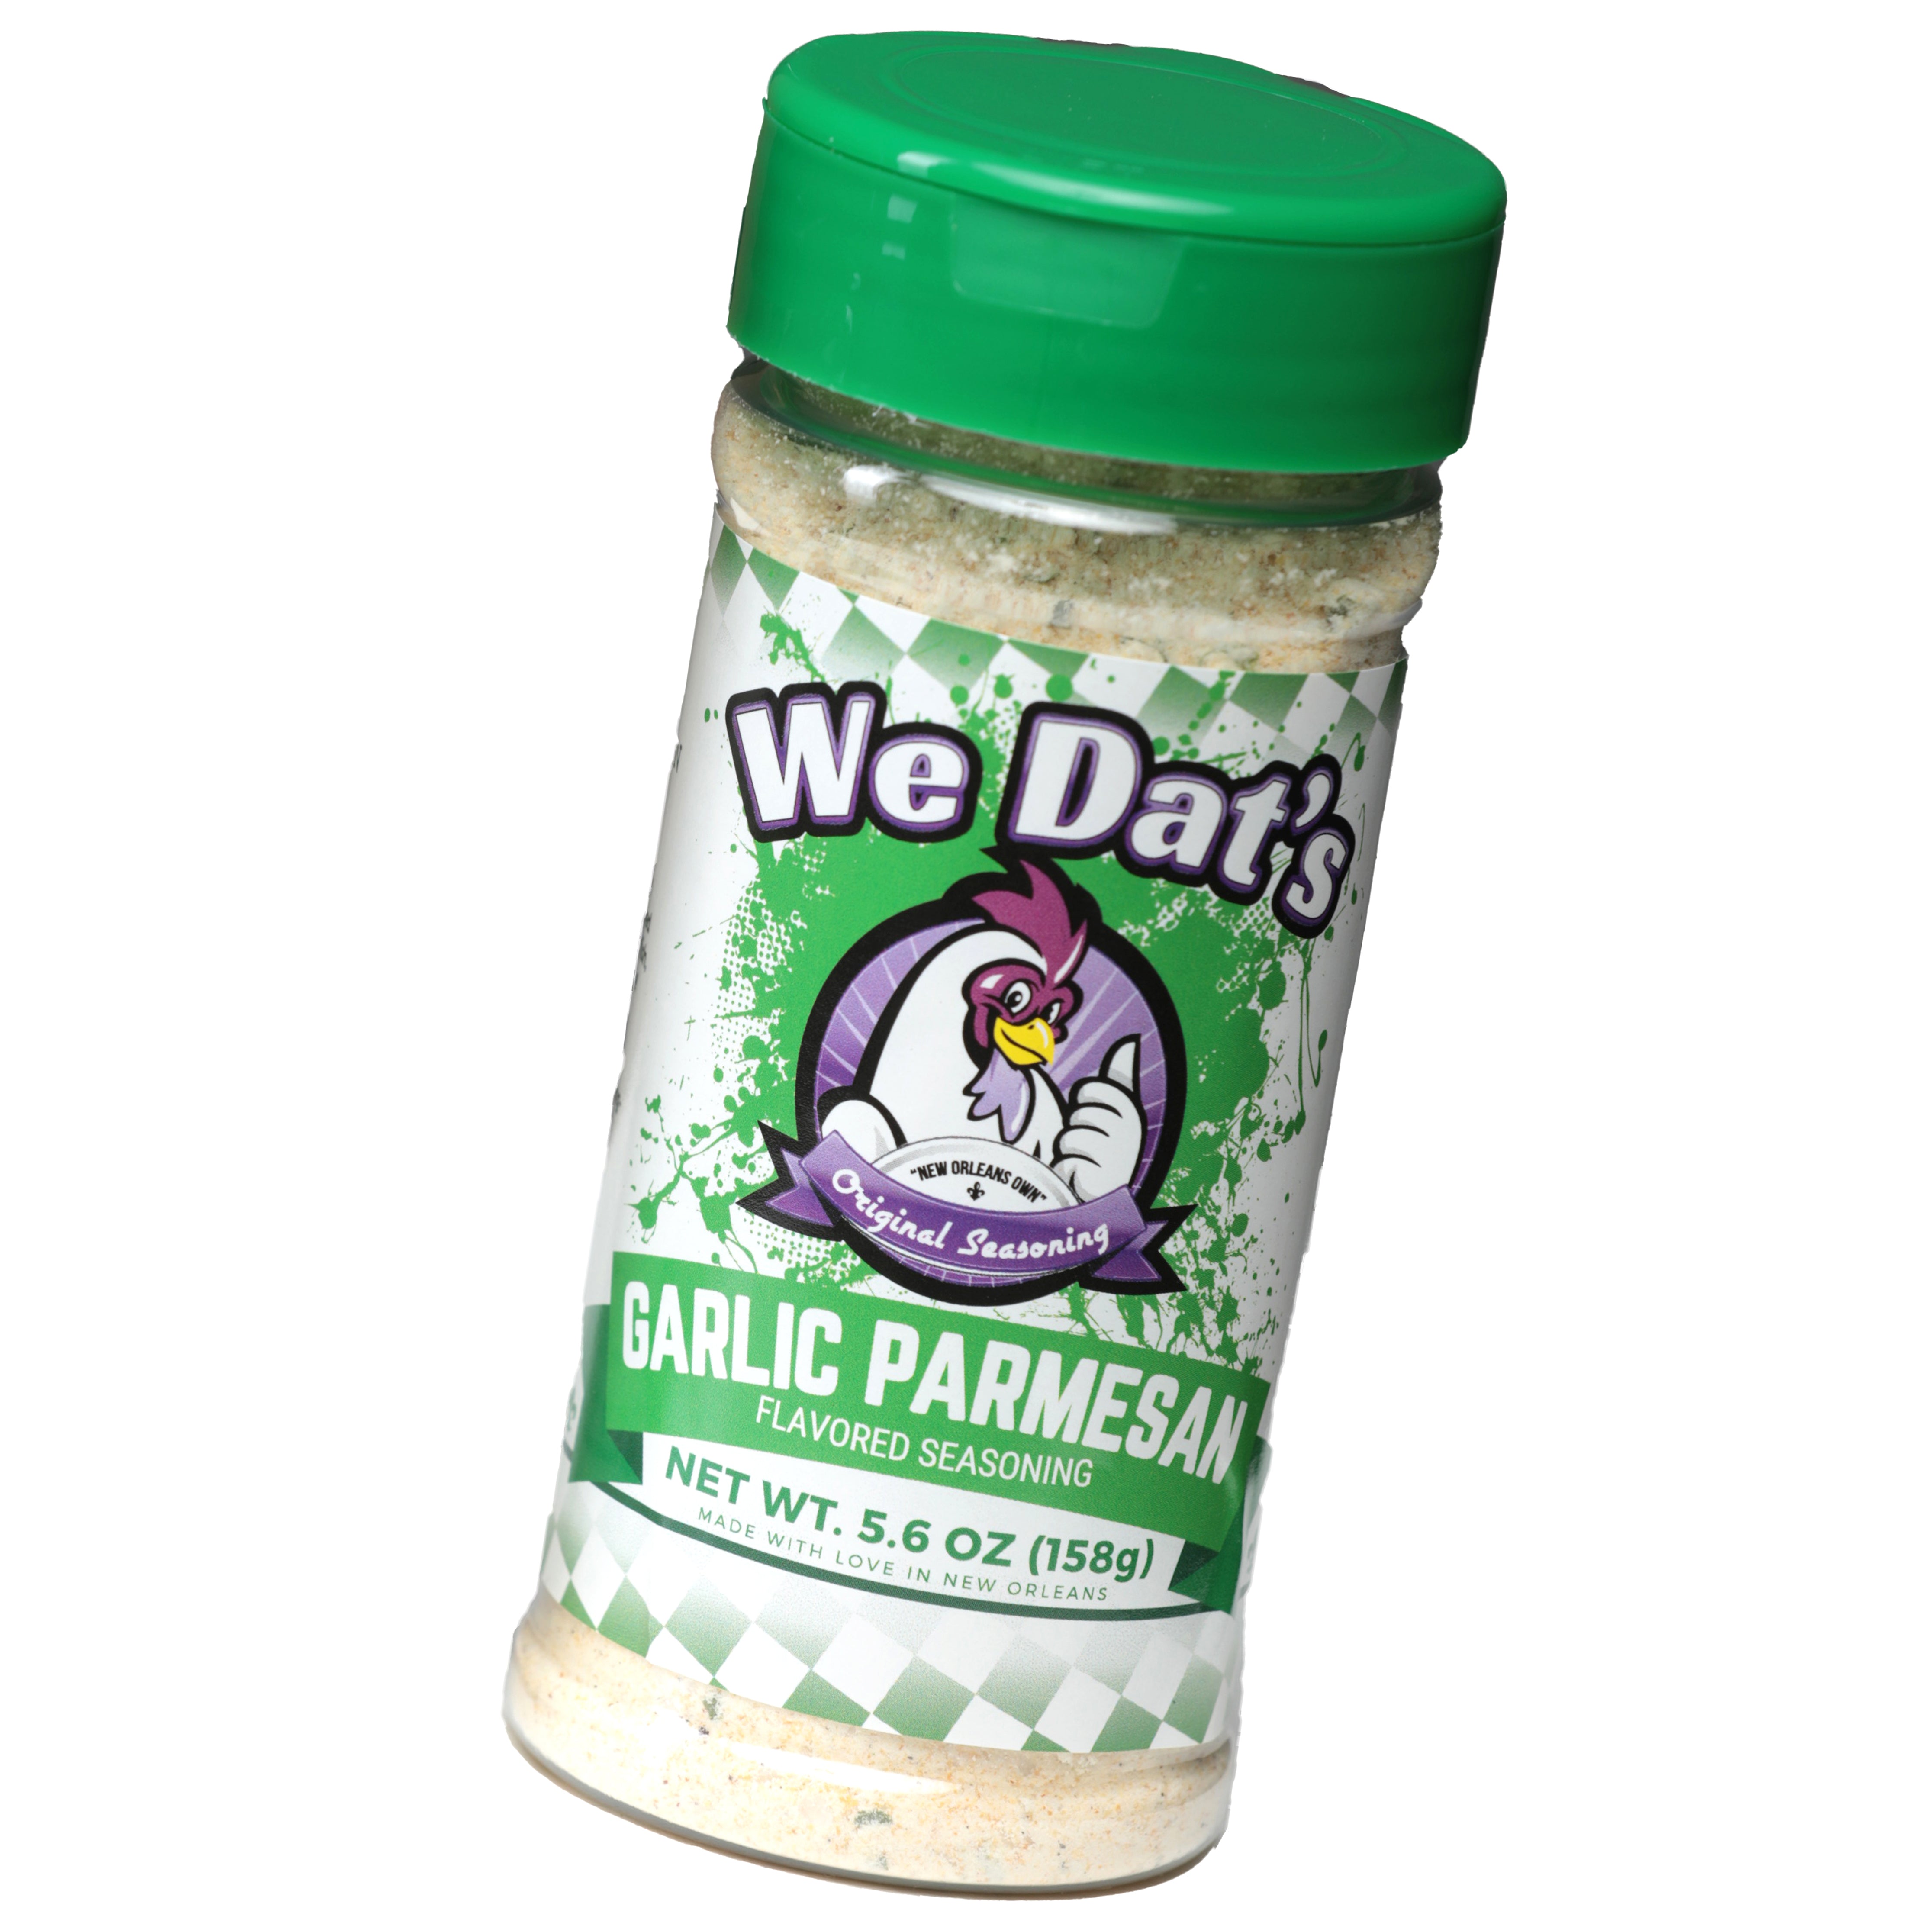 We Dat's Garlic Parmesean Seasoning 5.6oz (158g) Single